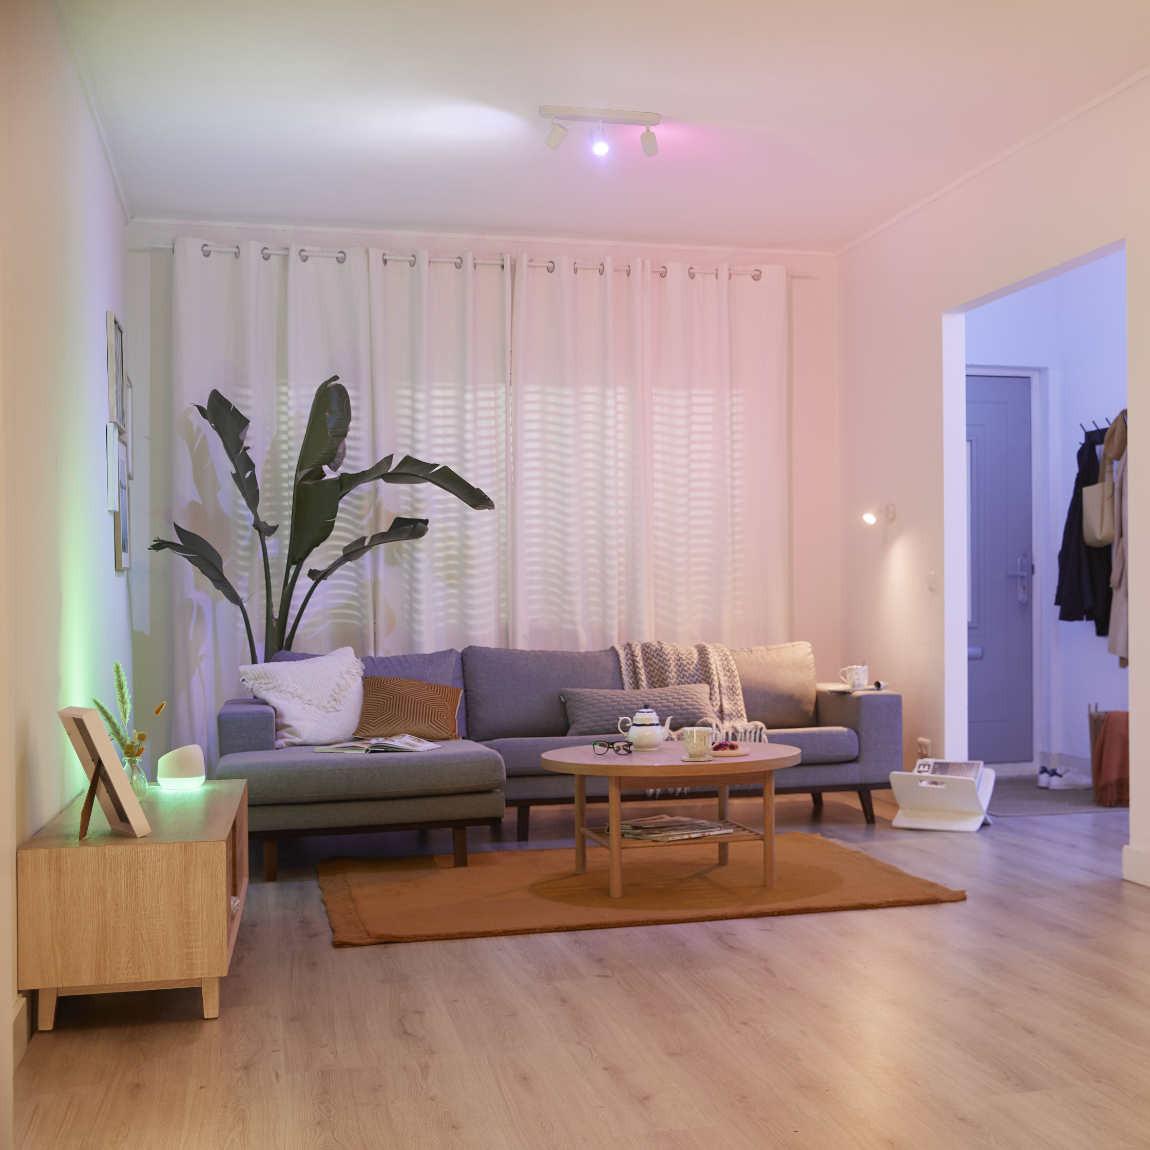 WiZ IMAGEO Spots Deckenleuchte Tunable Farbig 3x 5W - weiß_Lifestyle_Wohnzimmer farbig